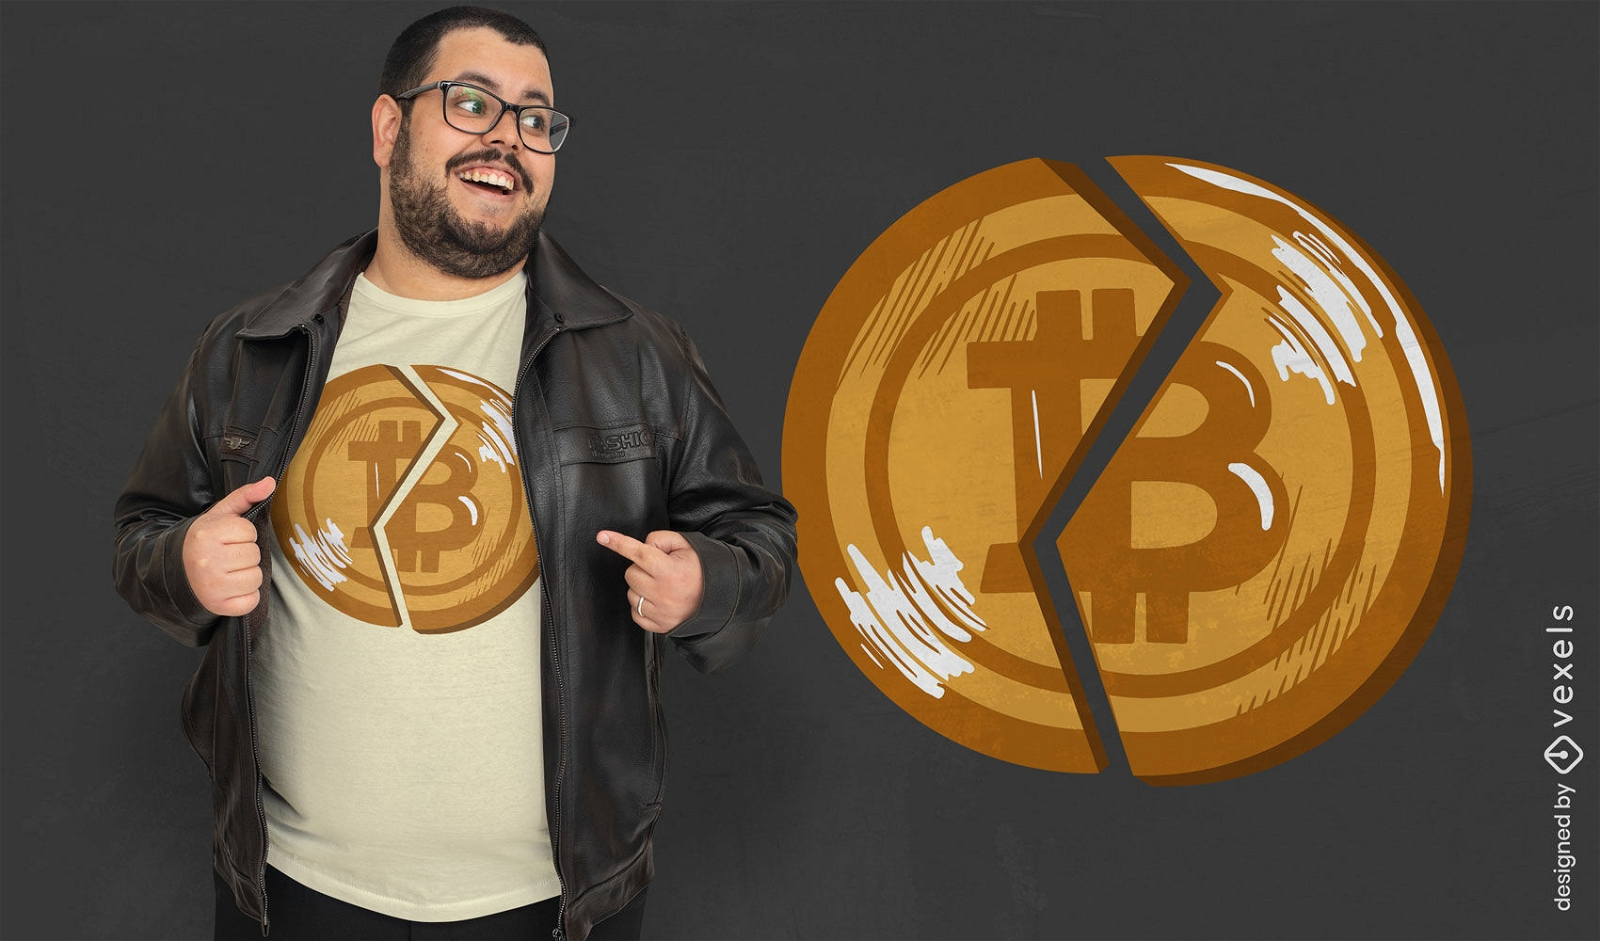 Diseño de camiseta con símbolo de bitcoin roto.